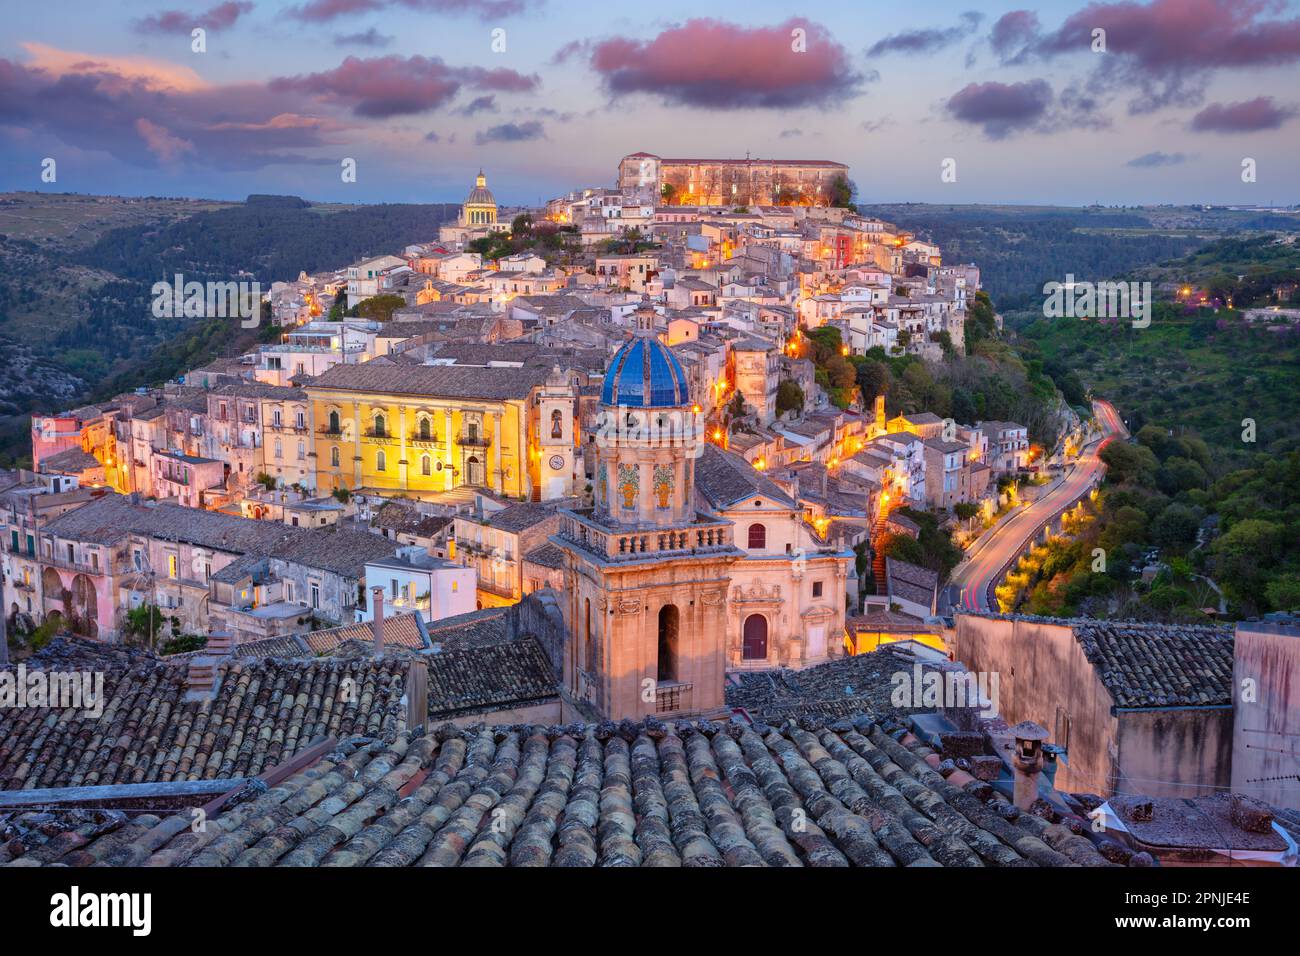 Ragusa Ibla, Sicilia, Italia. Immagine del paesaggio urbano della città storica Ragusa Isla, Sicilia al tramonto. Foto Stock